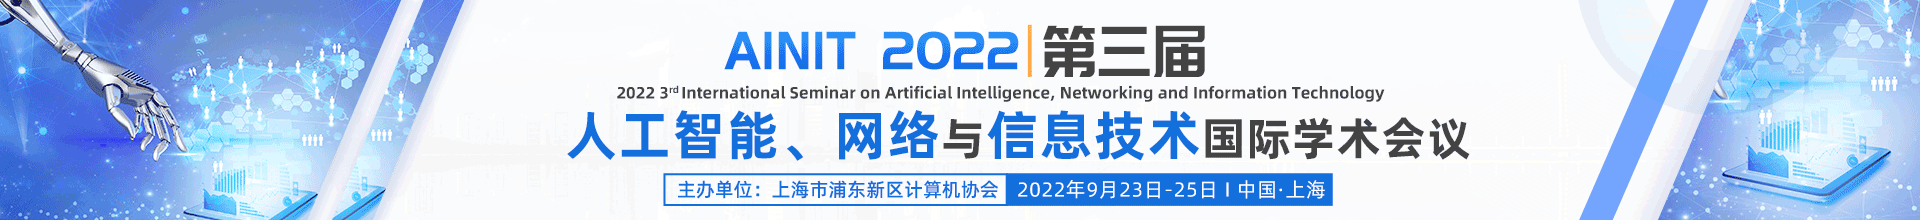 9月上海-AINIT-2022-学术会议云PC端（上线平台）-陈军-20220310.png